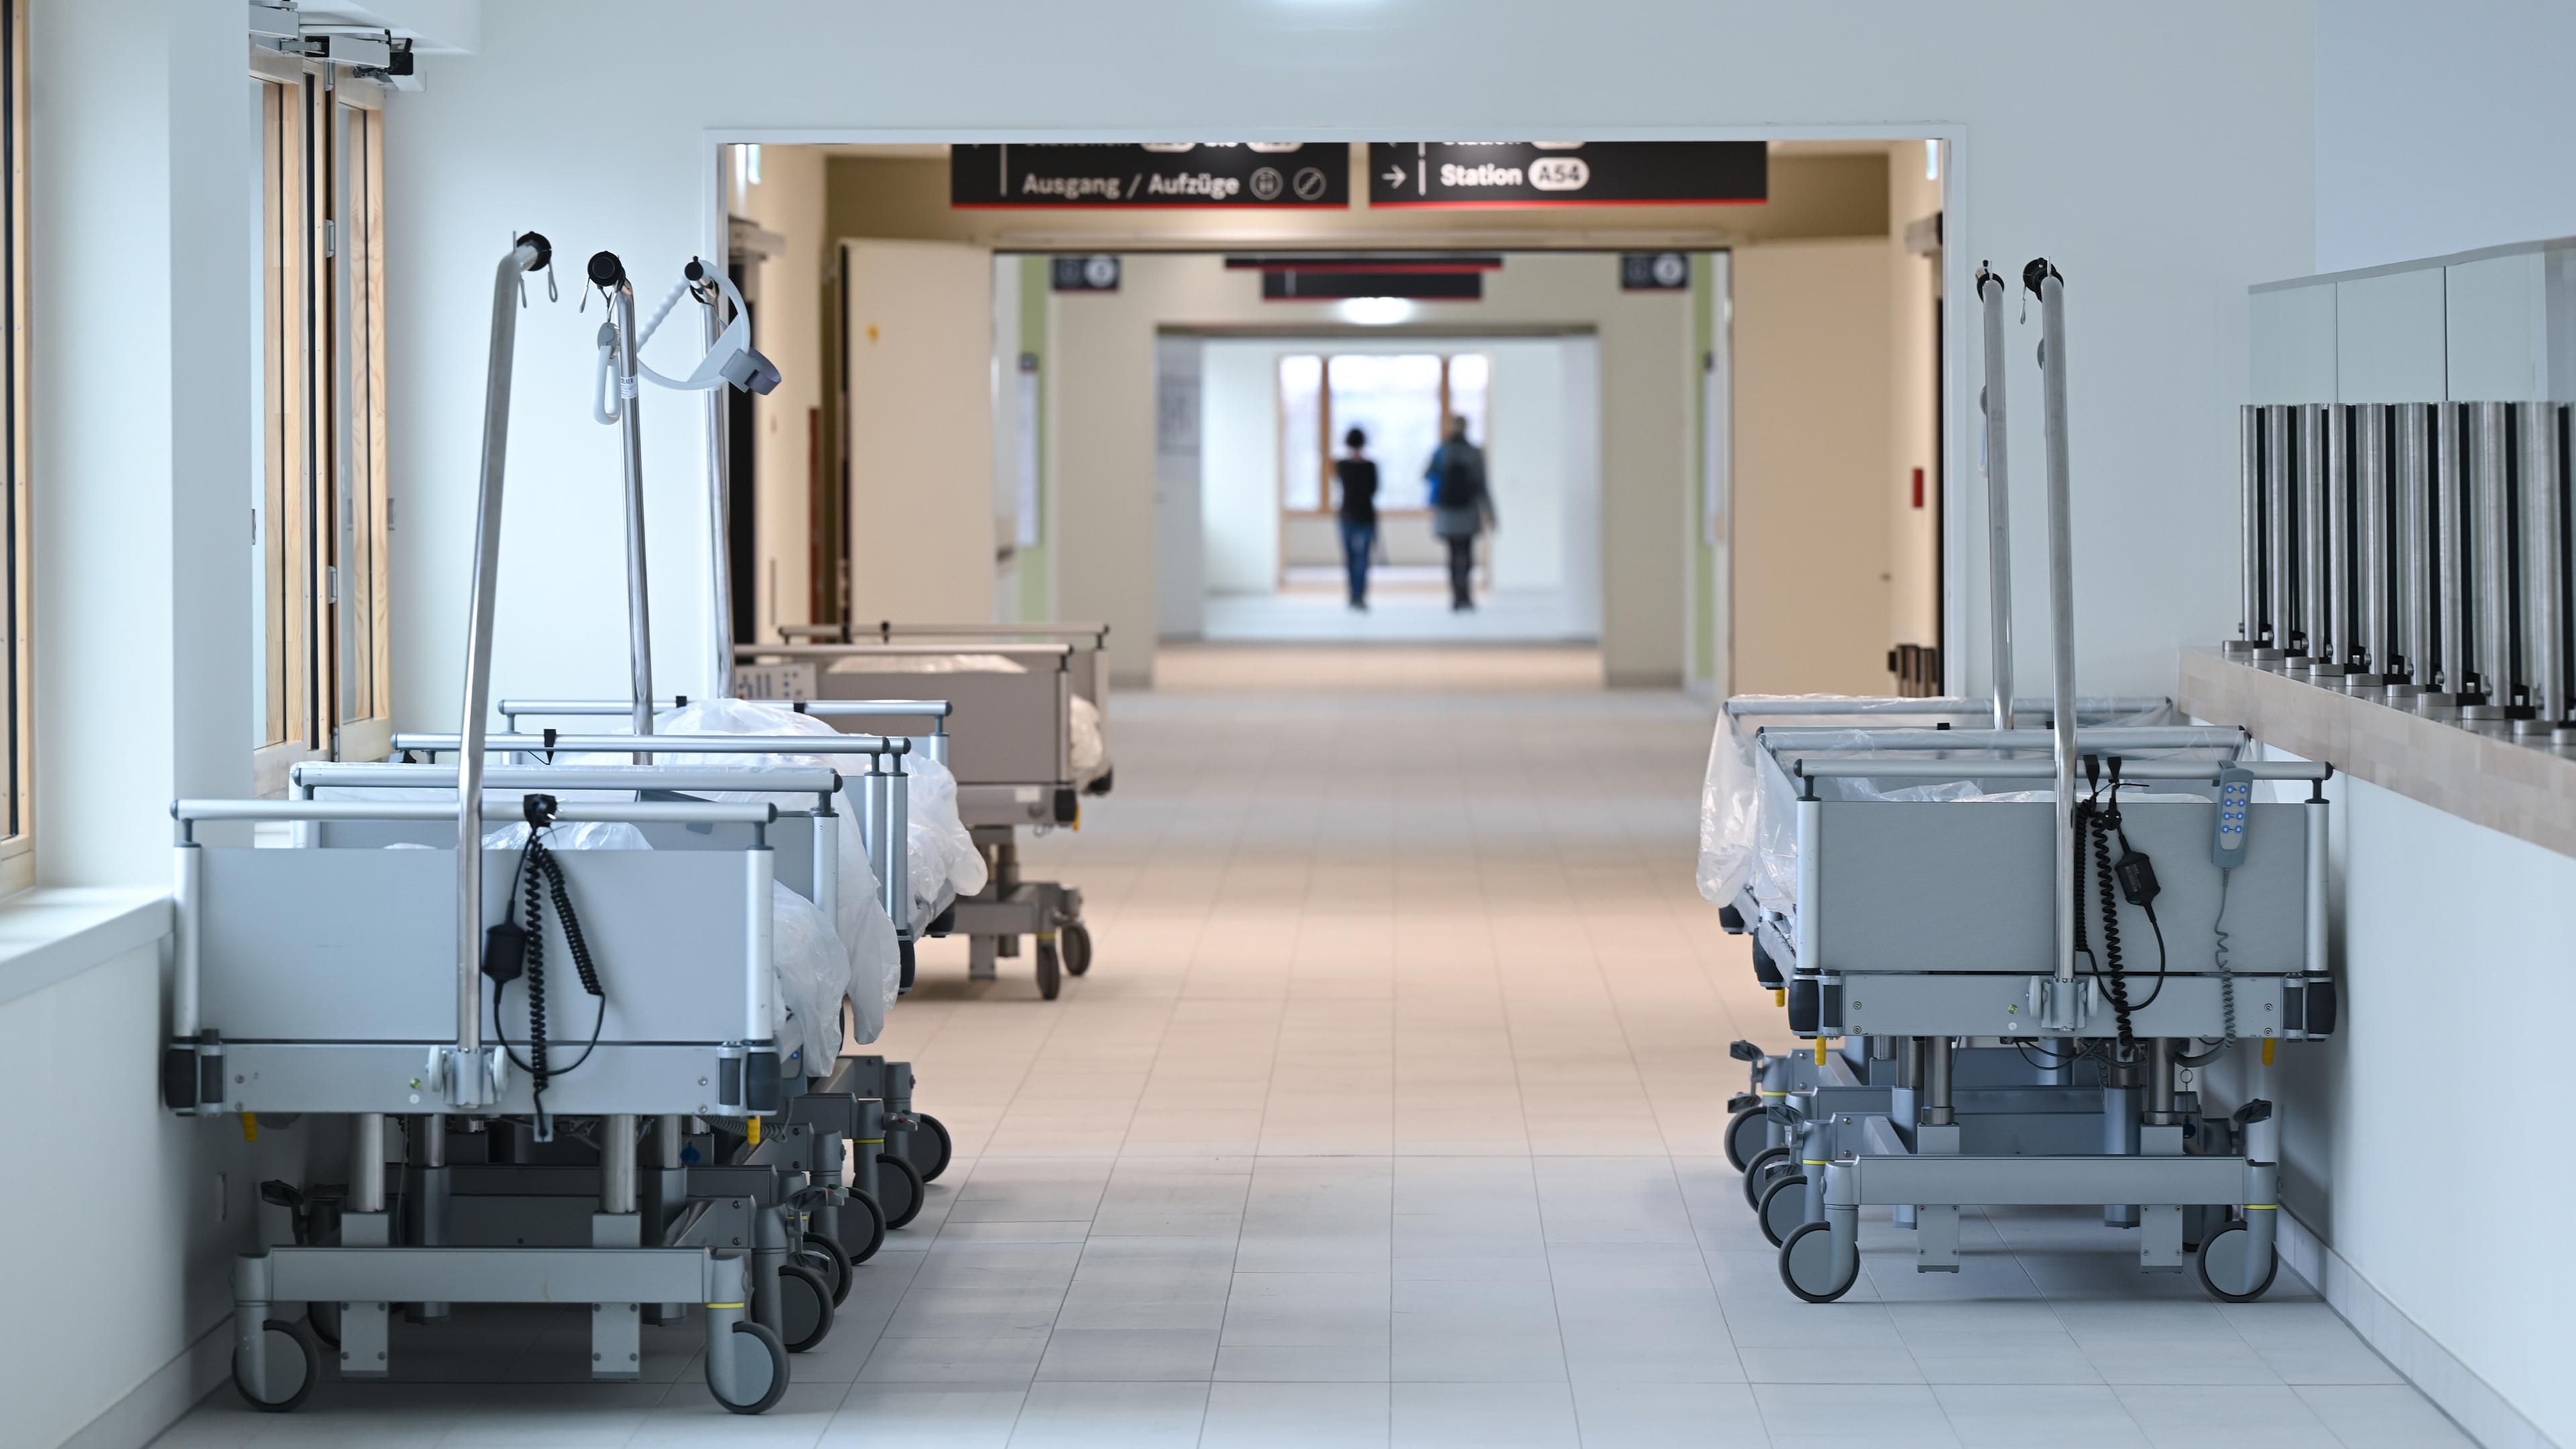 Leere Krankenbetten stehen in einem Neubau auf einen Klinikflur.